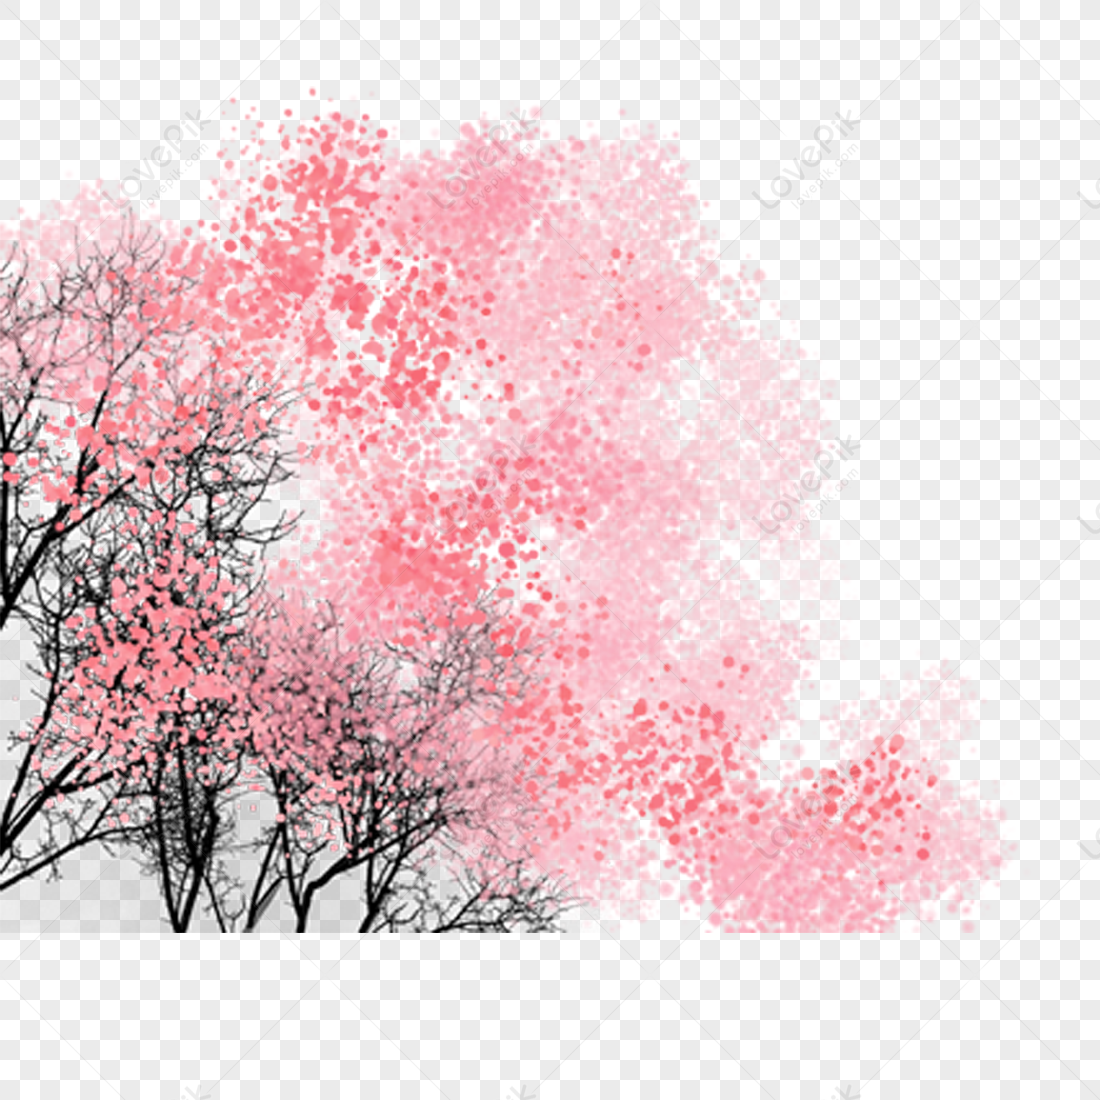 Flower, Light Red, Light Pink, Black Tree PNG Transparent Background ...